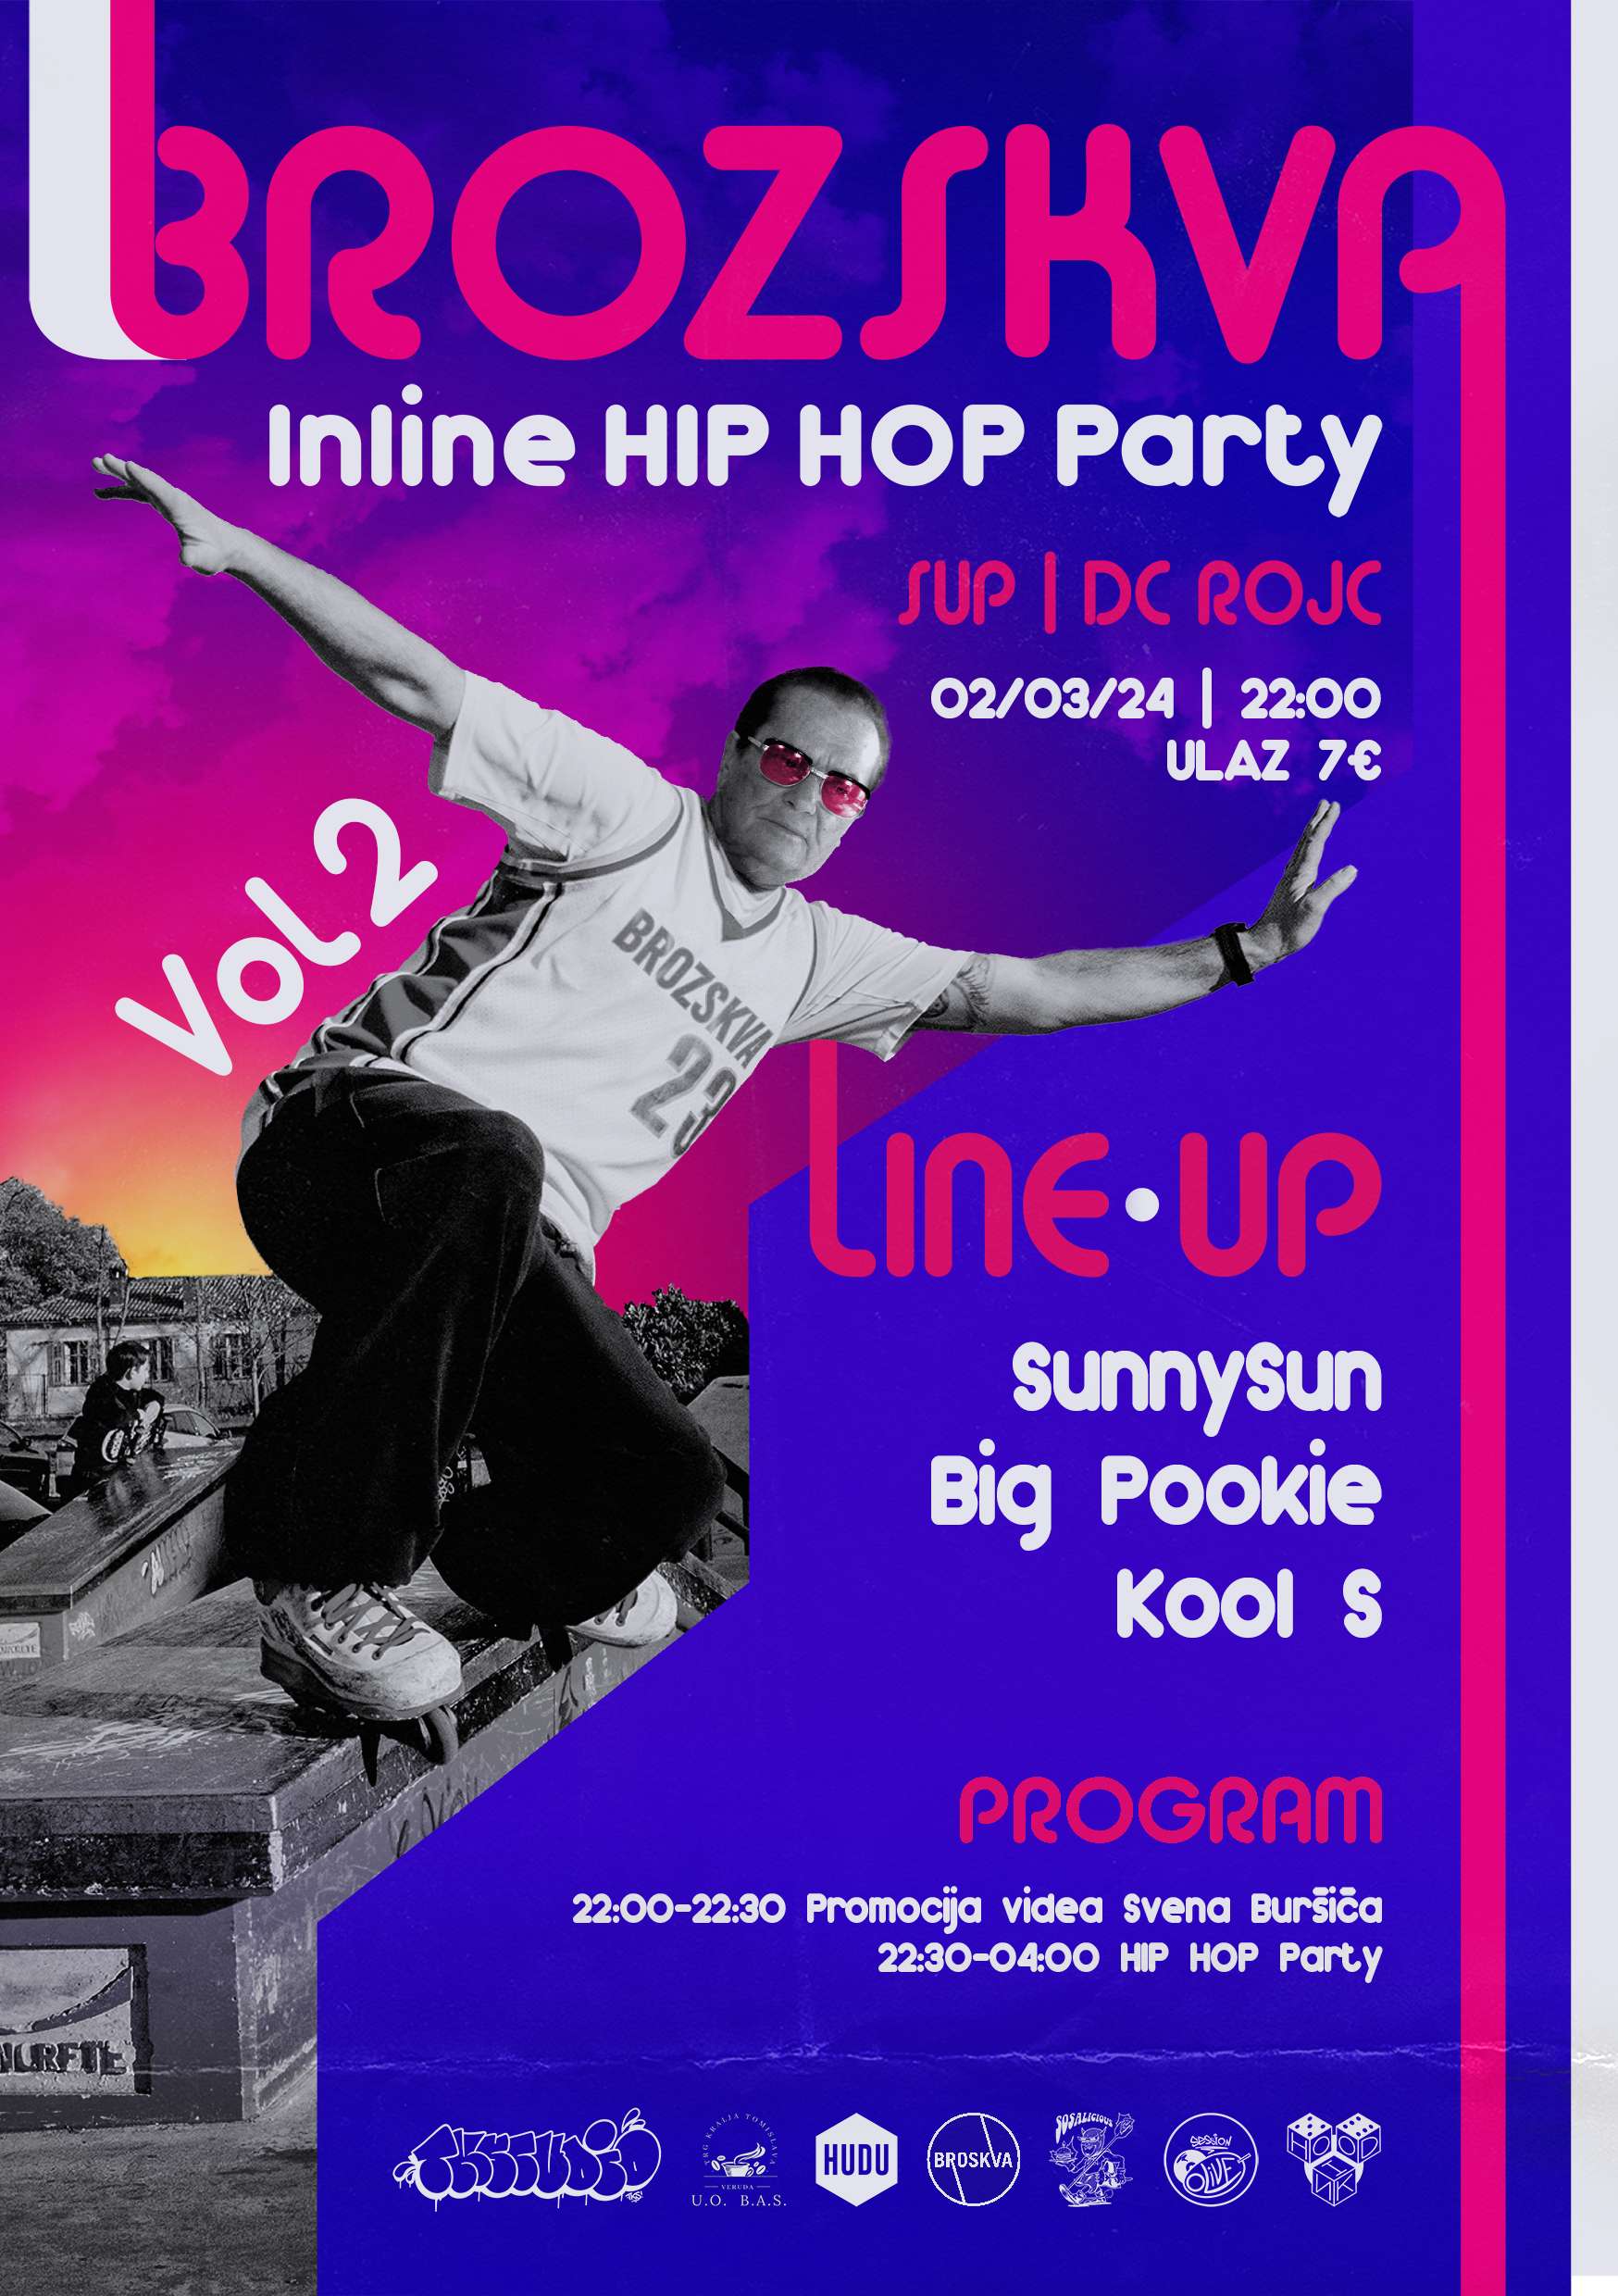 Brozskva Inline Hip Hop party vol. 2